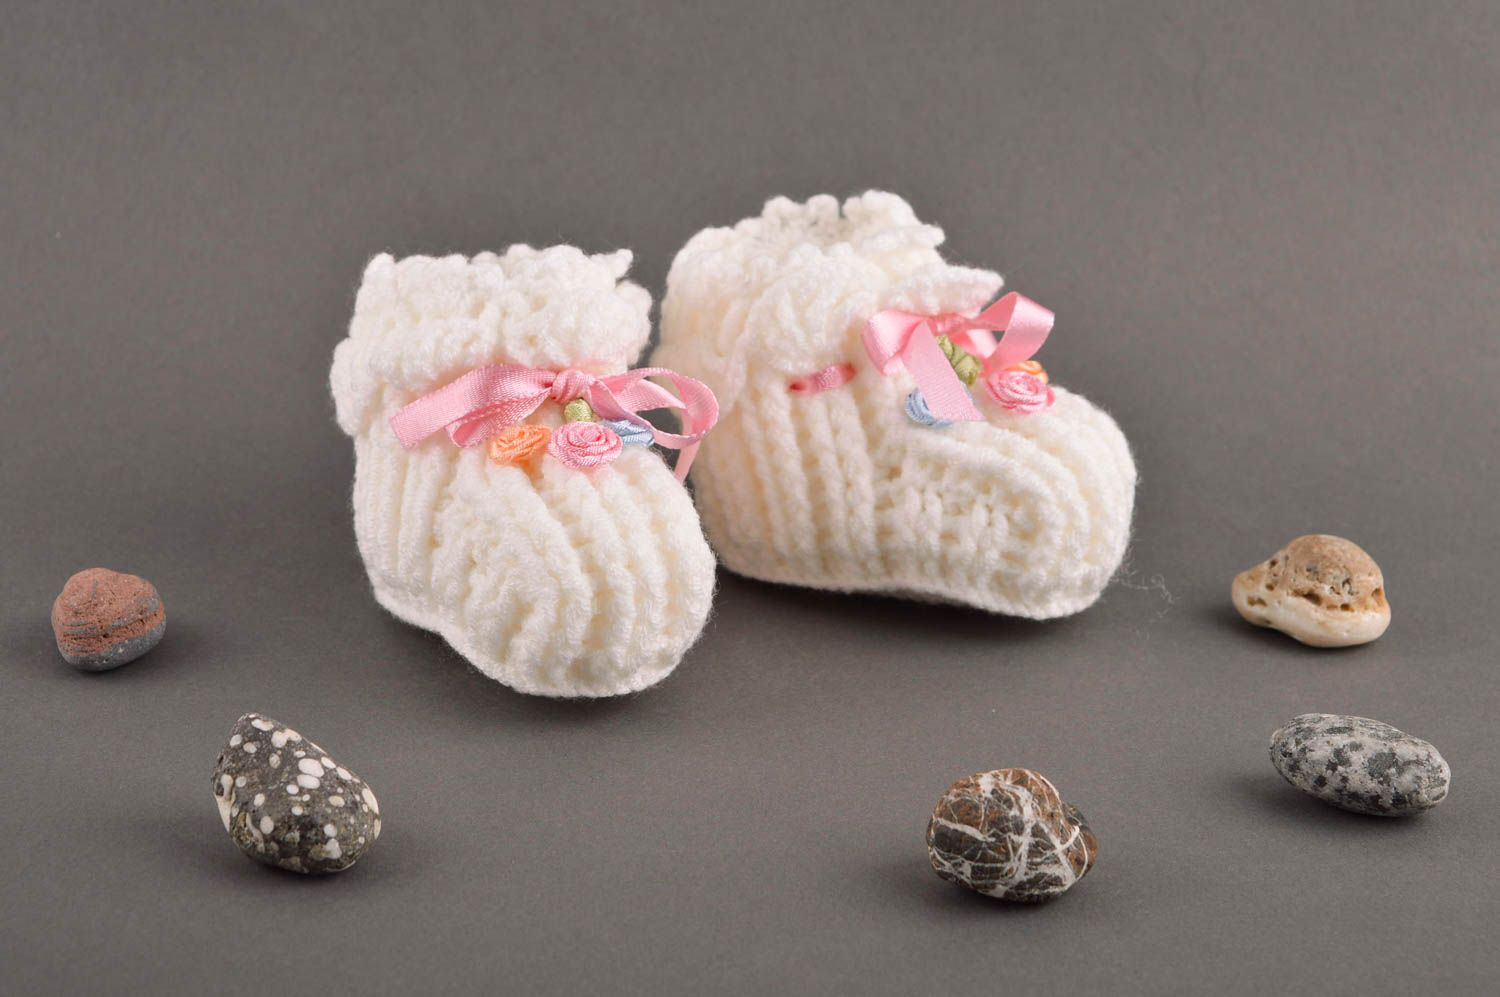 Sandalias de bebé hechas a mano patucos de bebé regalo original para niños foto 1